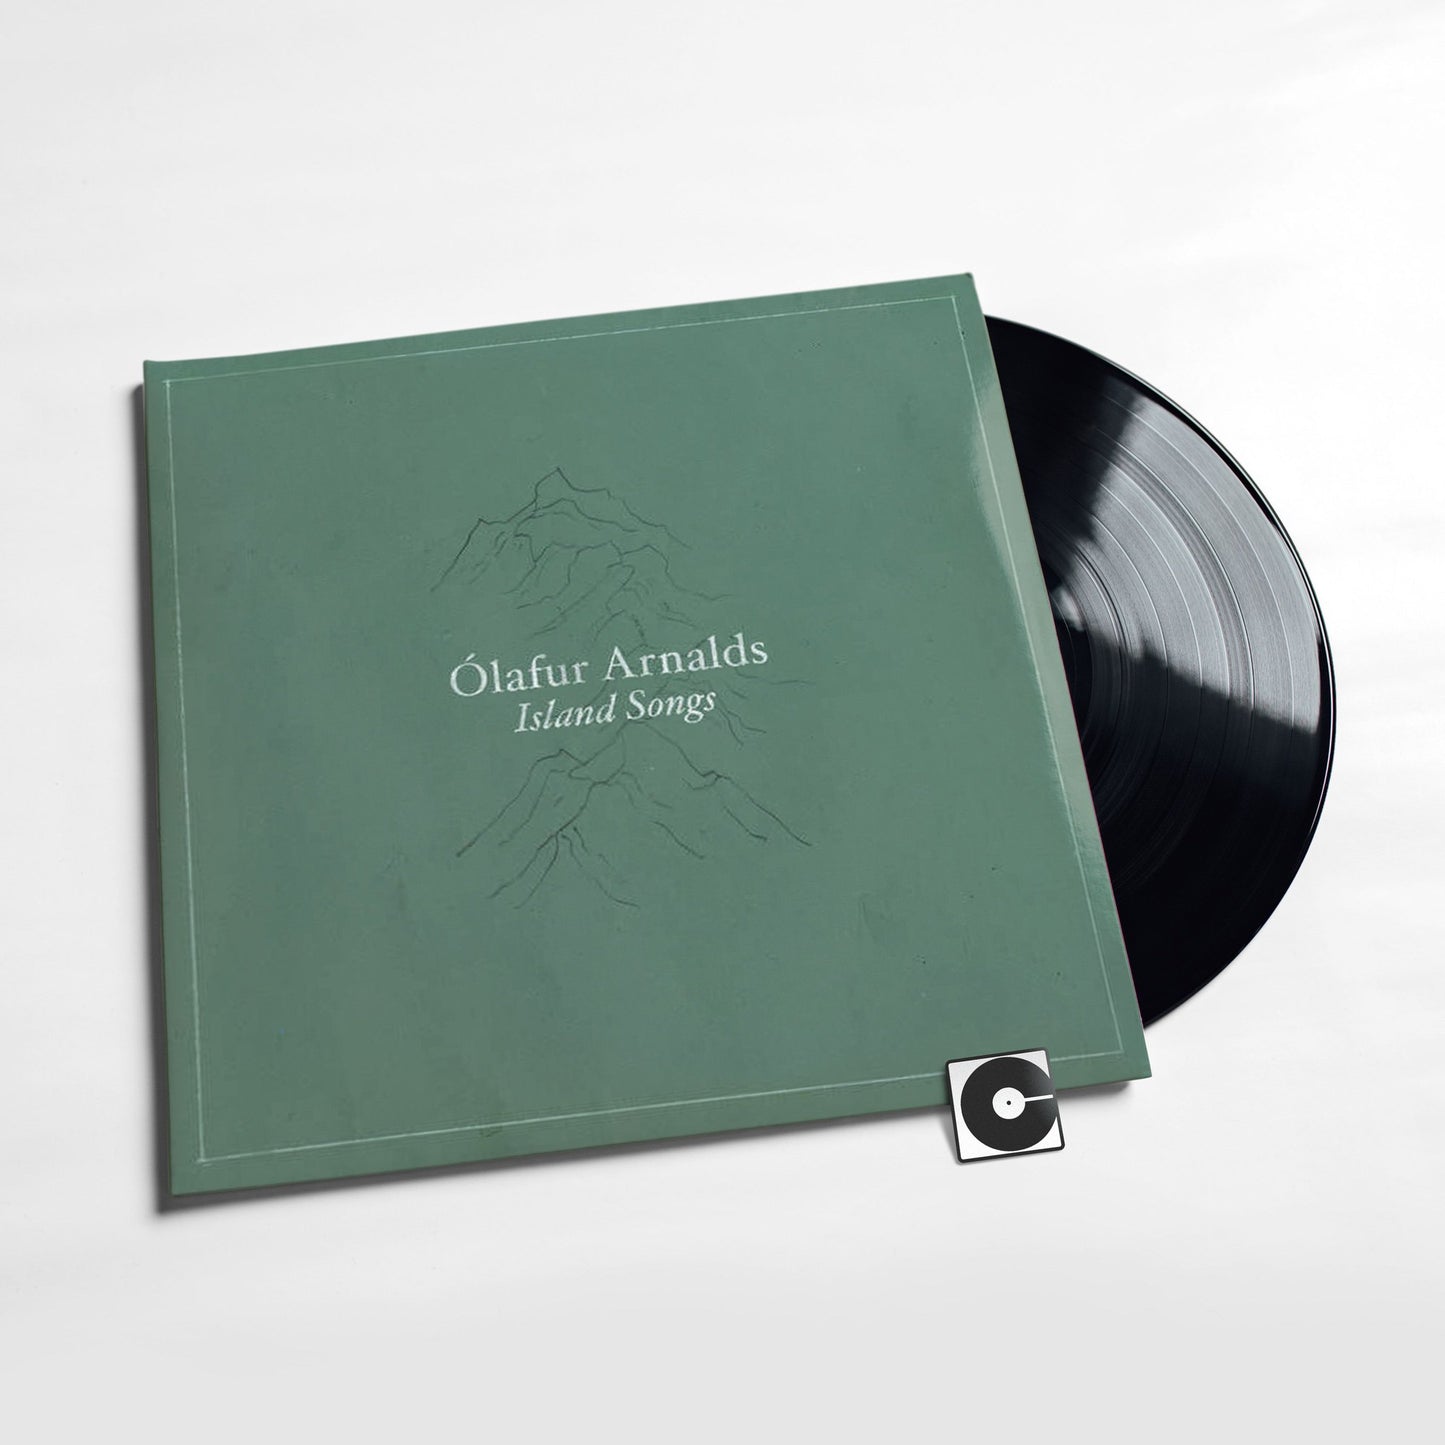 Olafur Arnalds - "Island Songs"